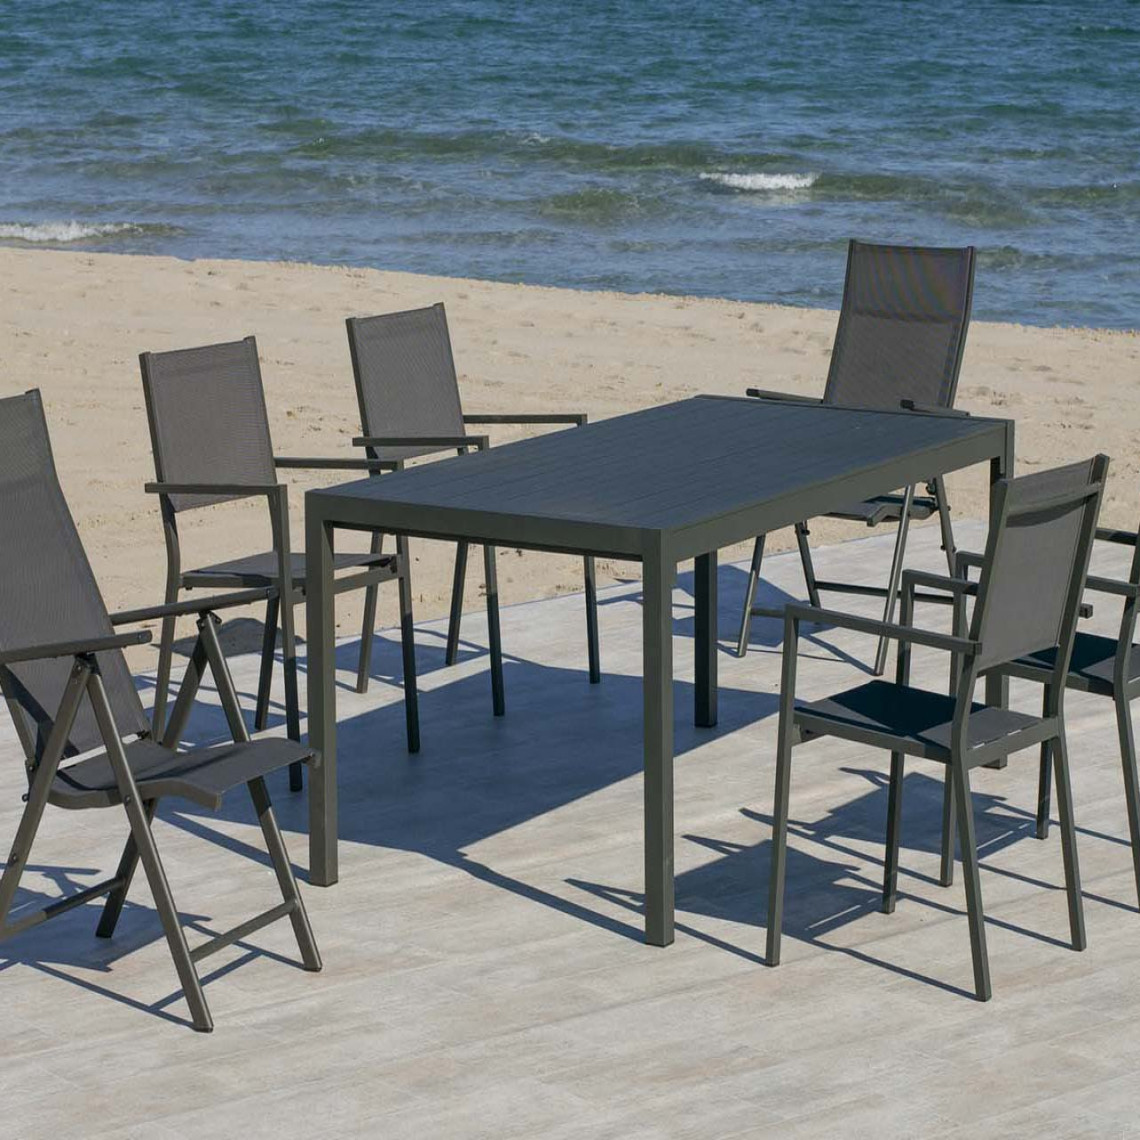 Hevea - Salon de jardin en aluminium 6 personnes Palma casablanca - Ensembles tables et chaises